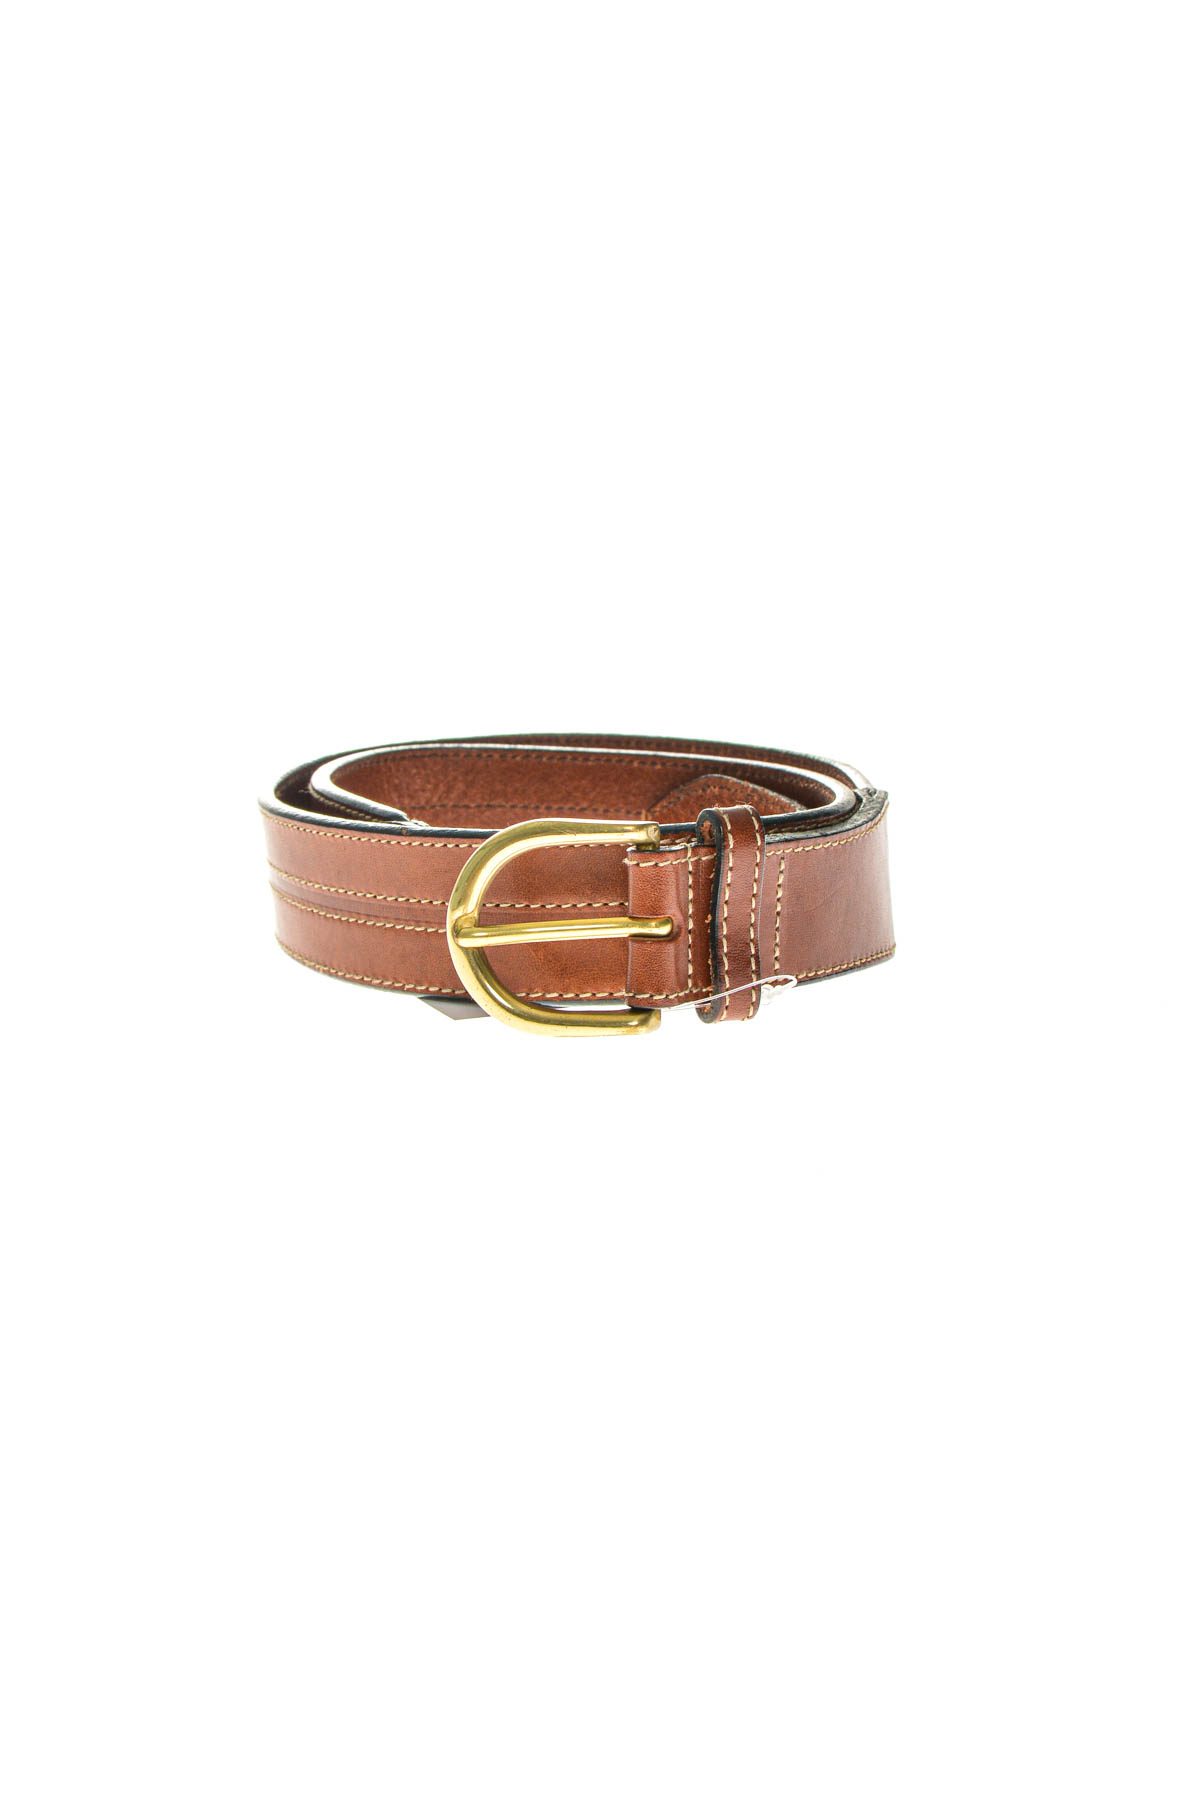 Men's belt - SCHUCHARD & FRIESE - 0